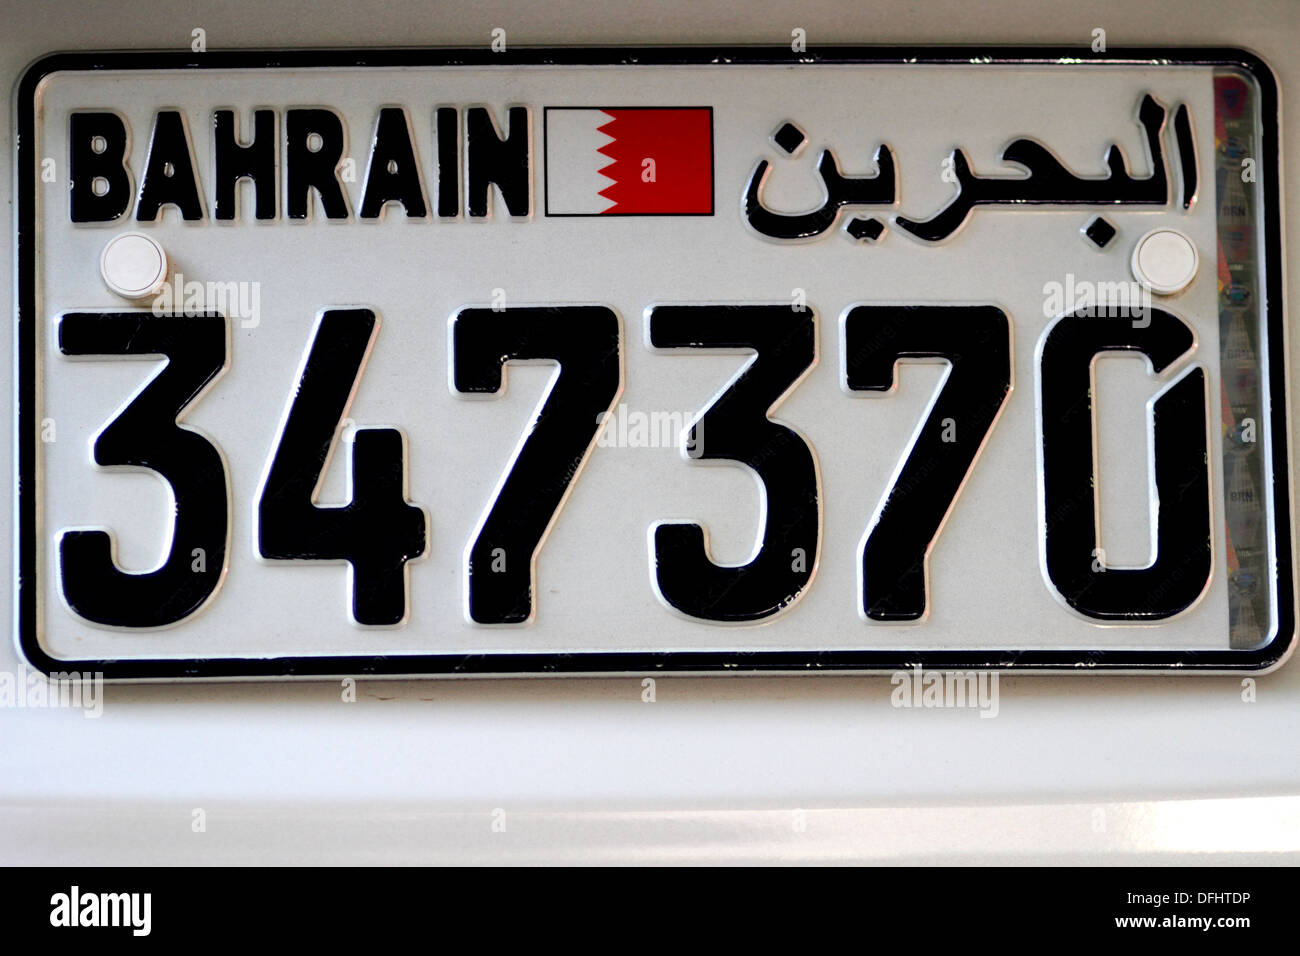 Nuovo stile di numero di targa, Regno del Bahrein Foto Stock